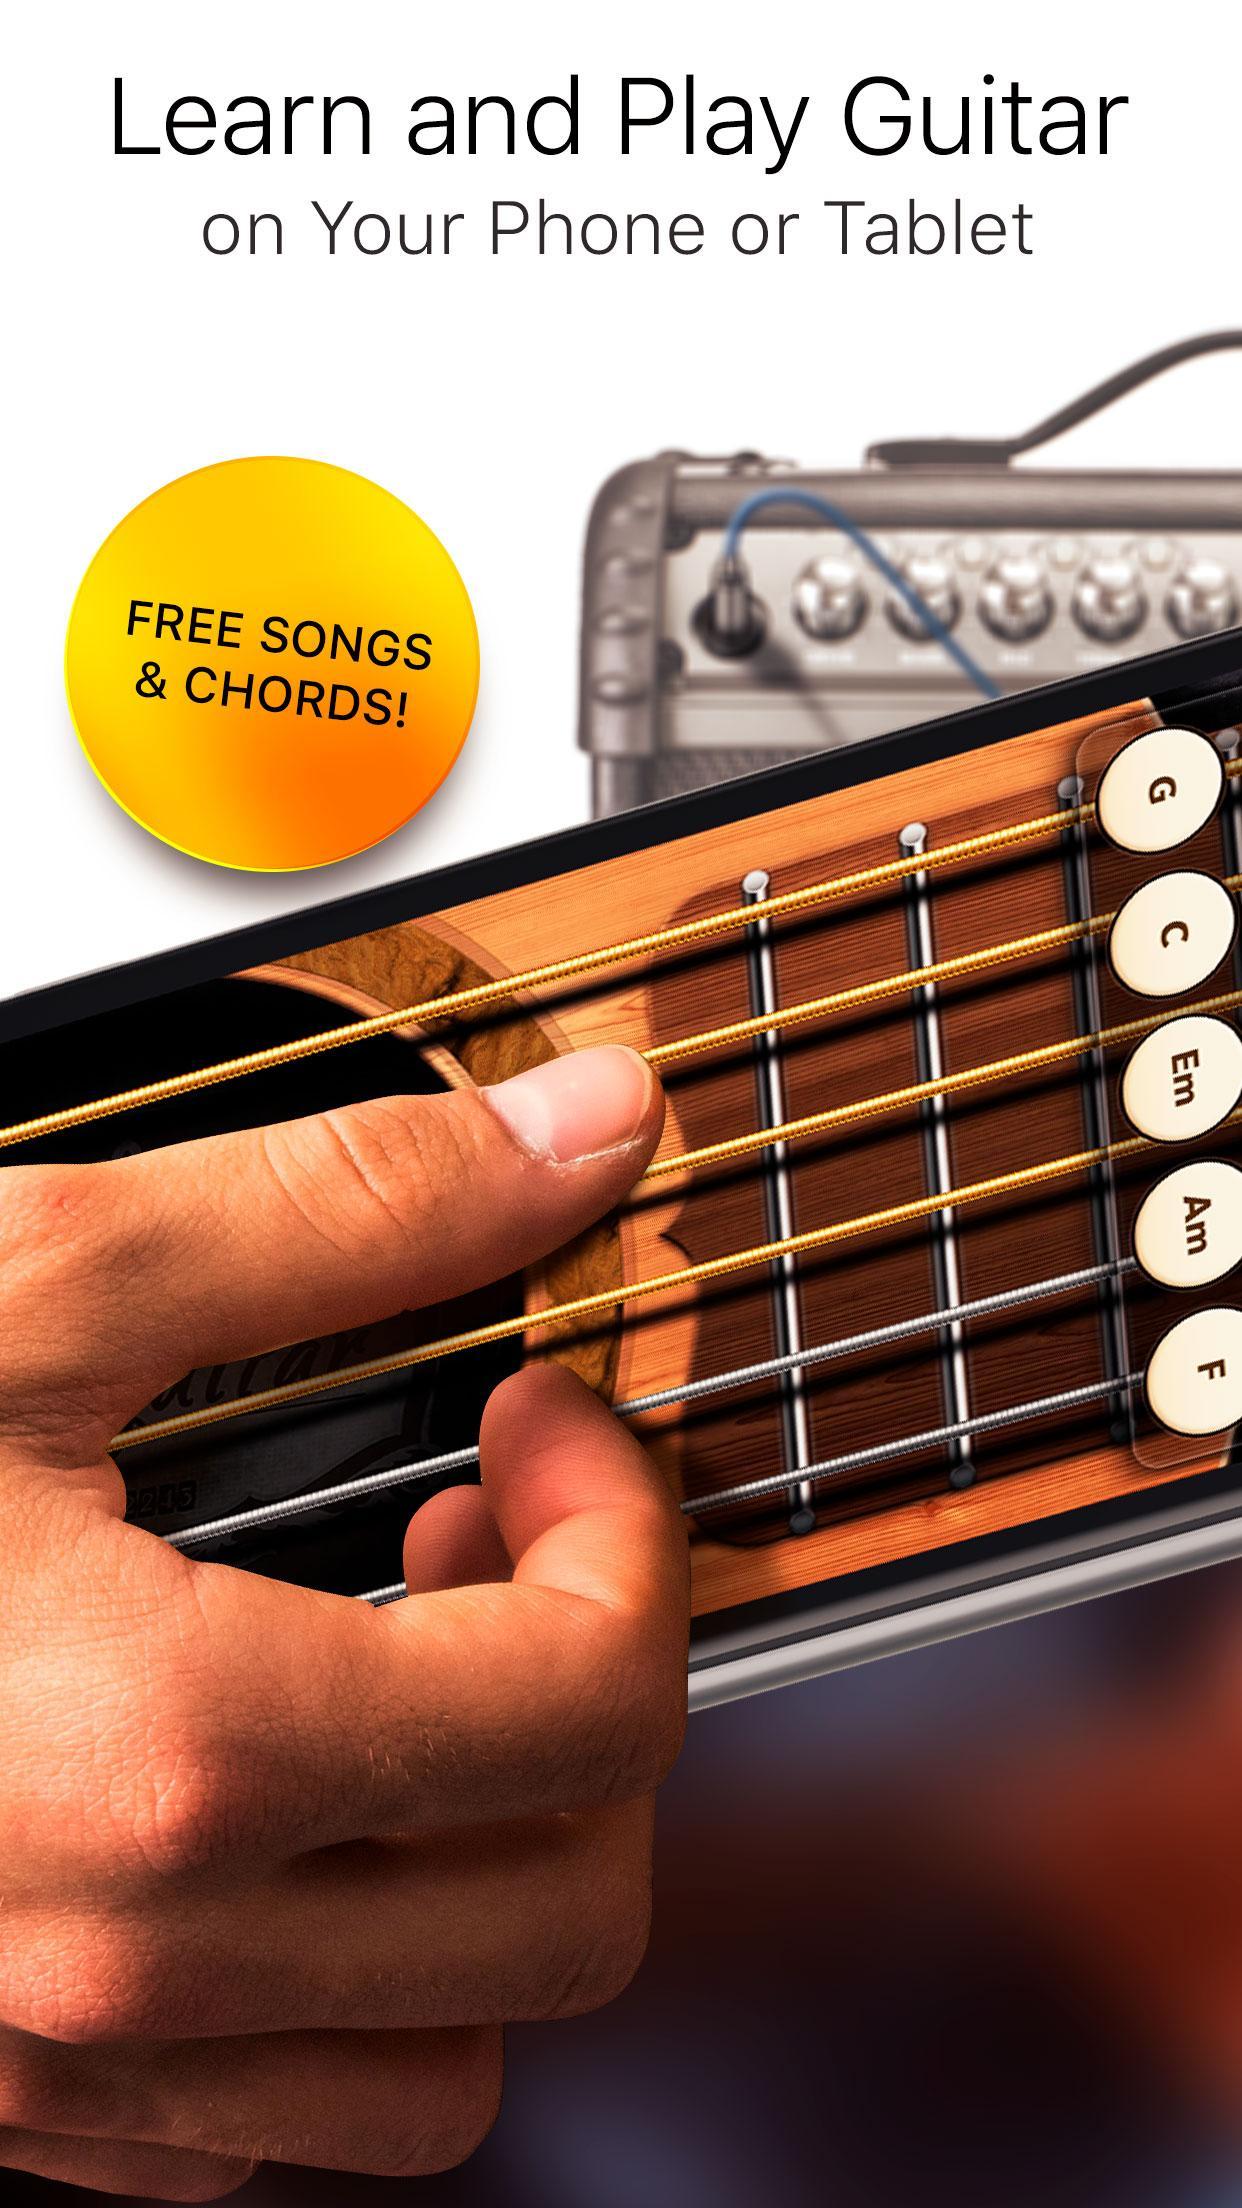 Real Guitar Free - Chords, Tabs & Simulator Games 3.31.0 Screenshot 1